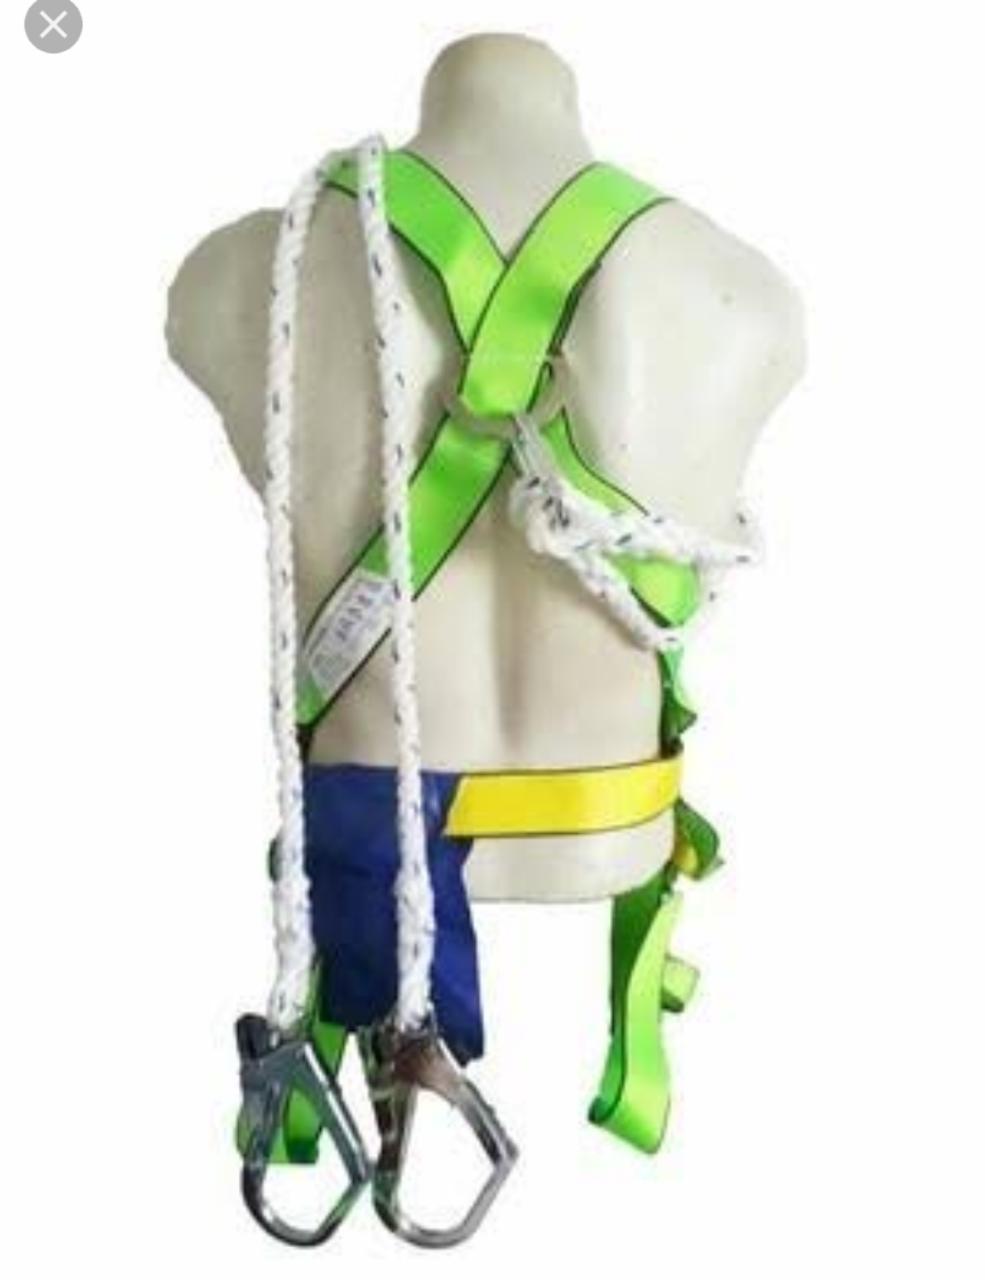 alat safety bali - full body harness